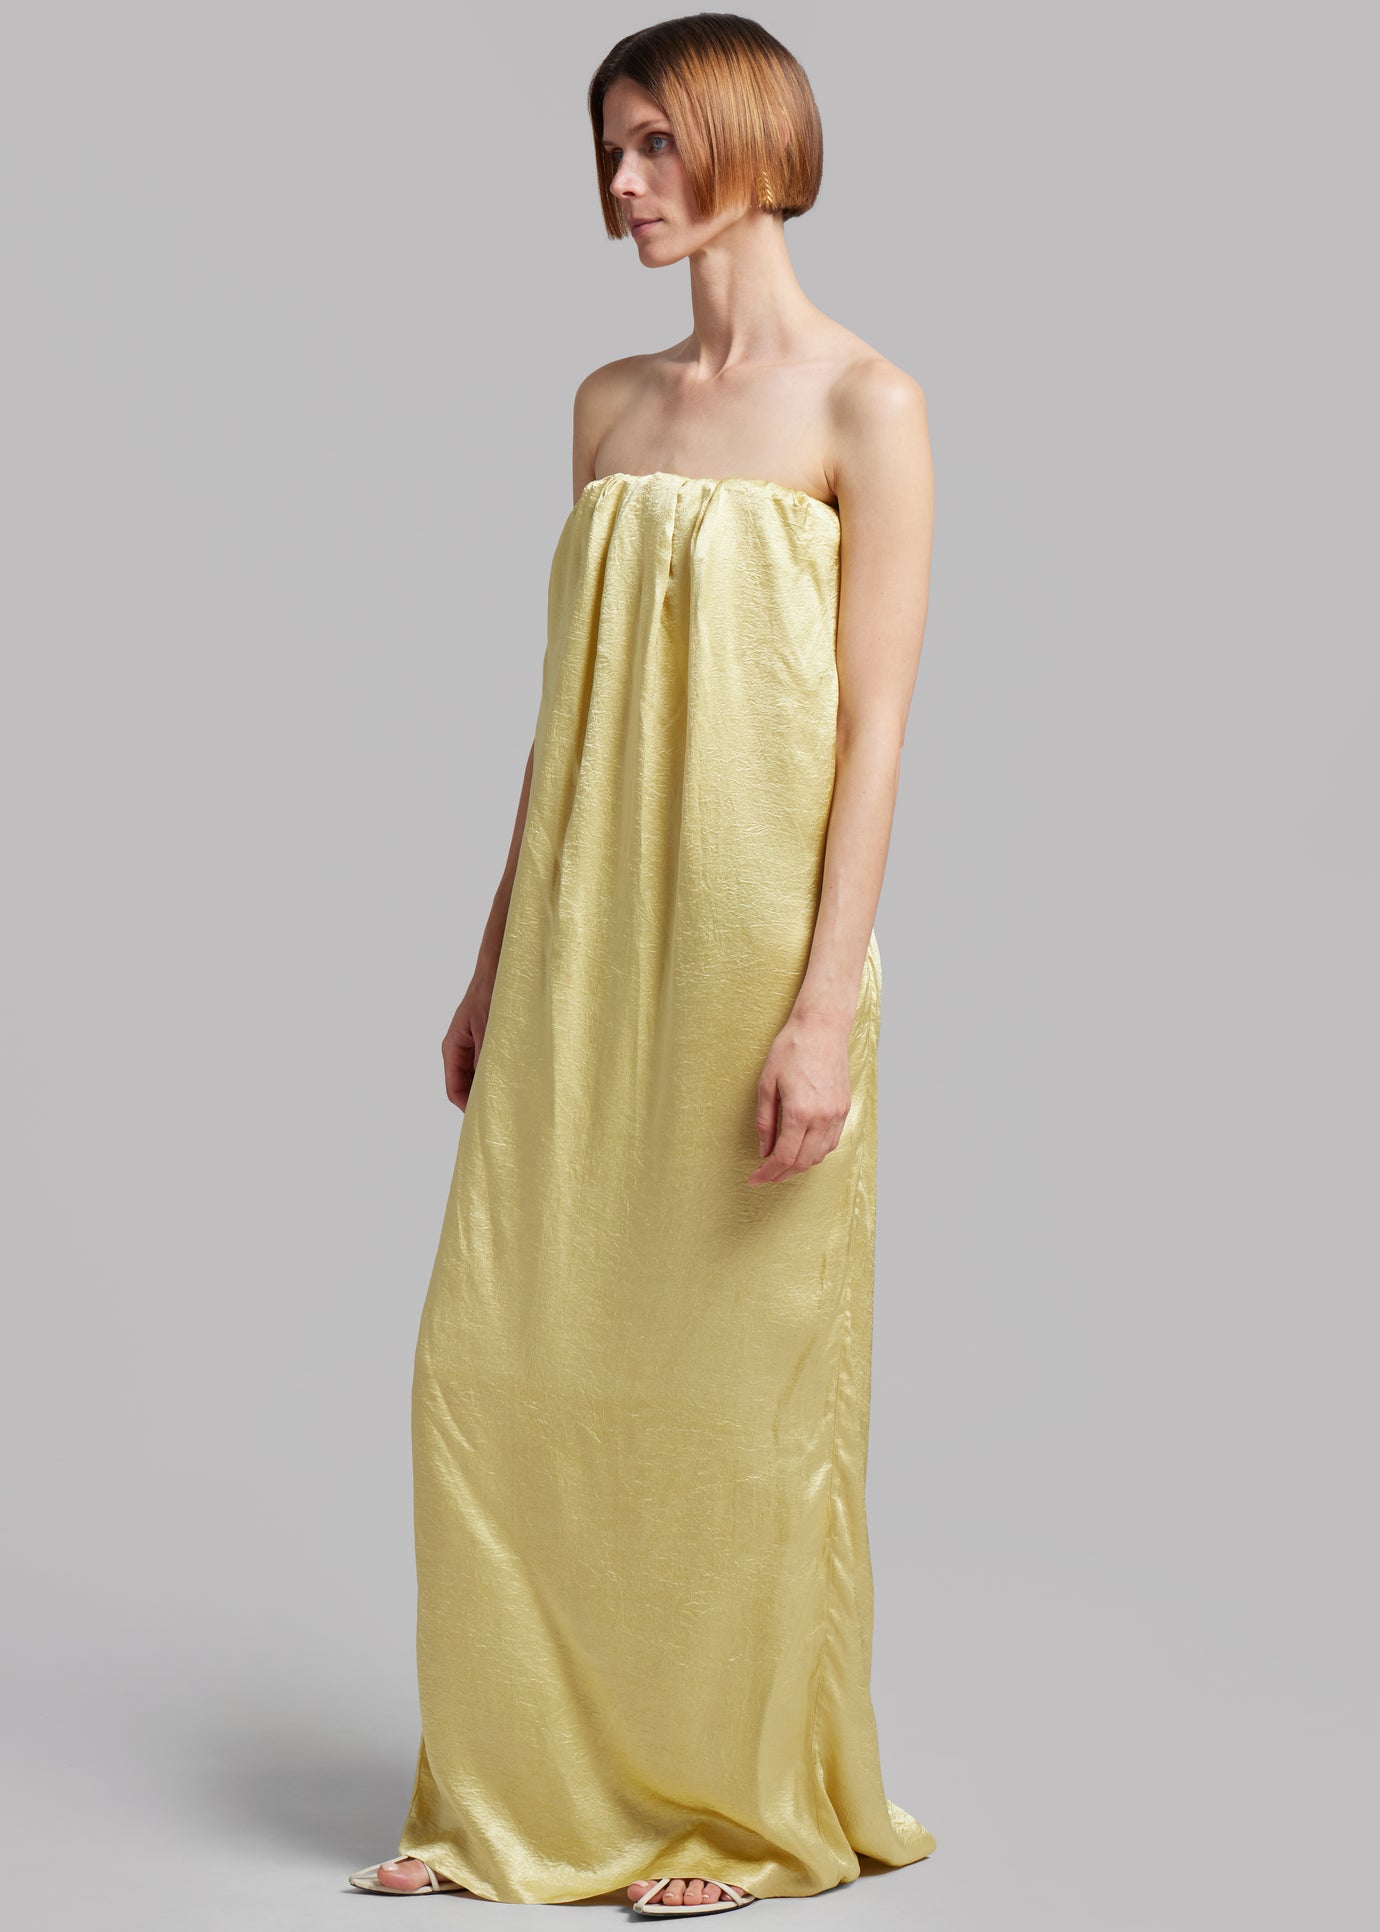 Anna October Tiana Maxi Dress - Yellow - 1